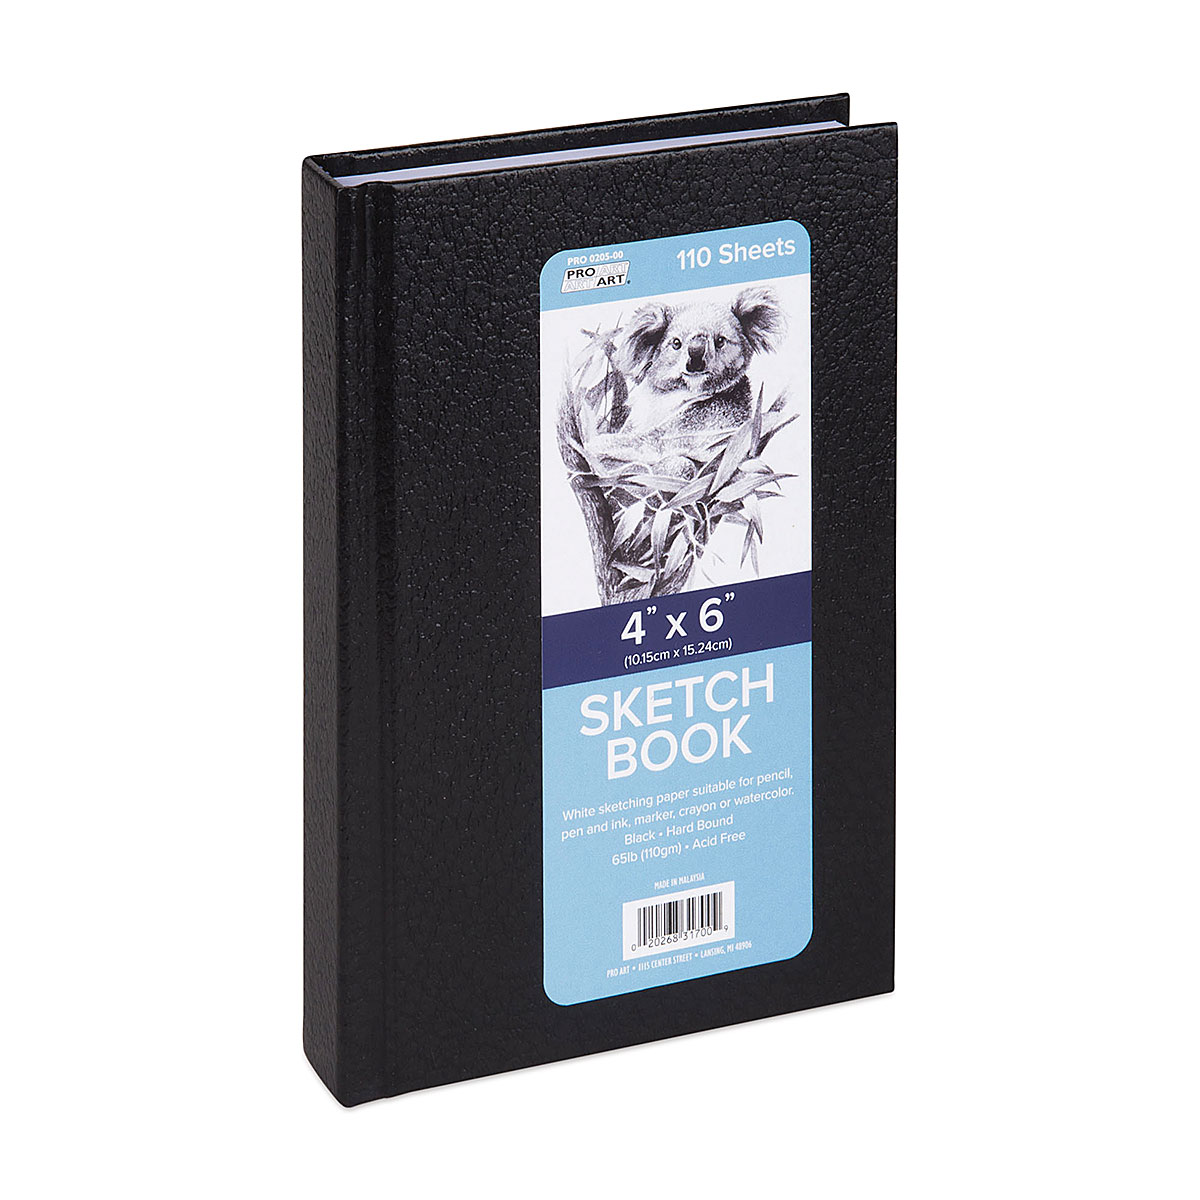 Pro Art Premier Sketch Book Travel 6x 4 White 74lb Black 80